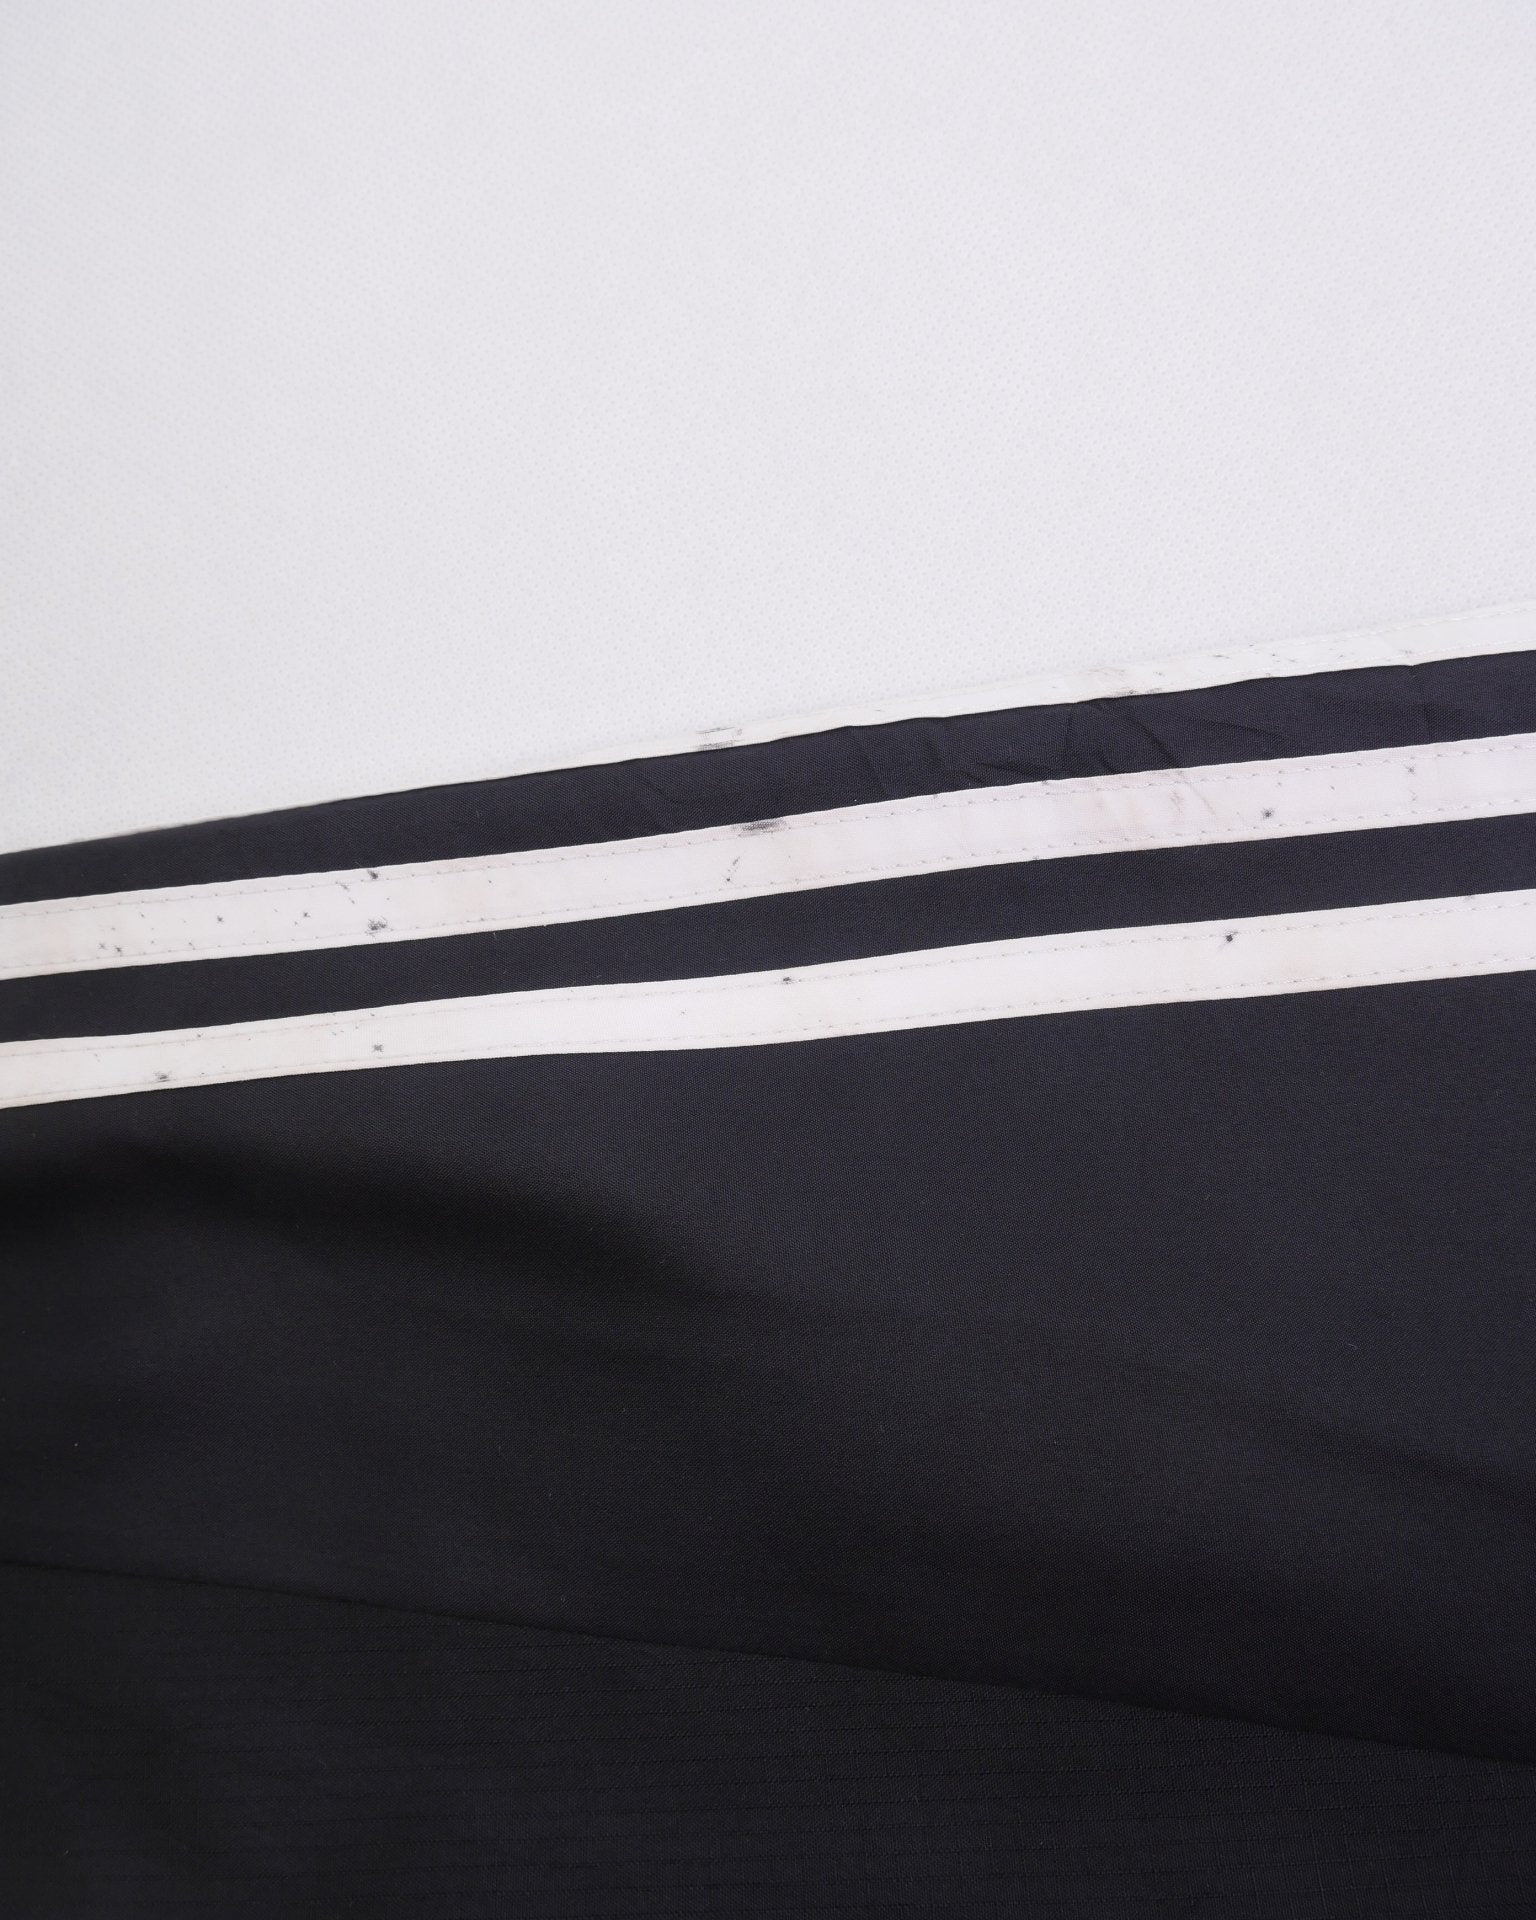 Adidas printed Logo Vintage Track Jacke - Peeces